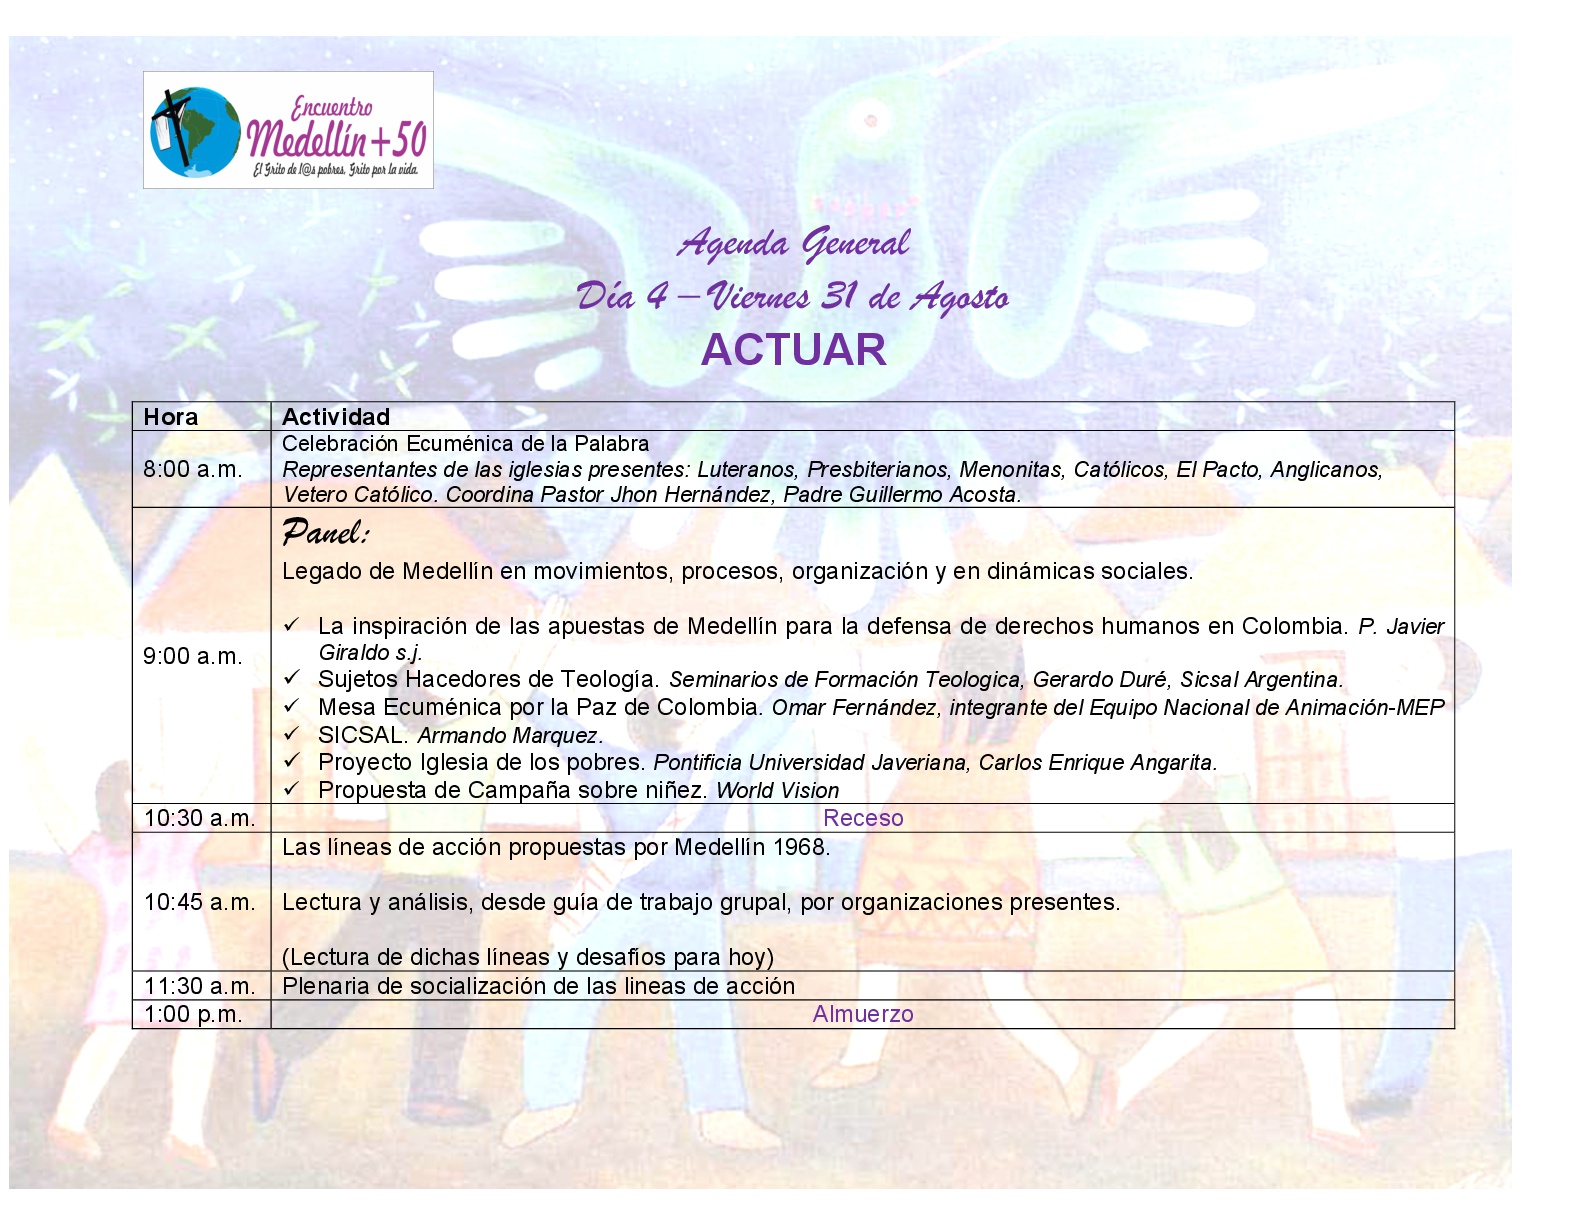 Agenda pdf.Medellin50.vf 23.Agosto.2018 007